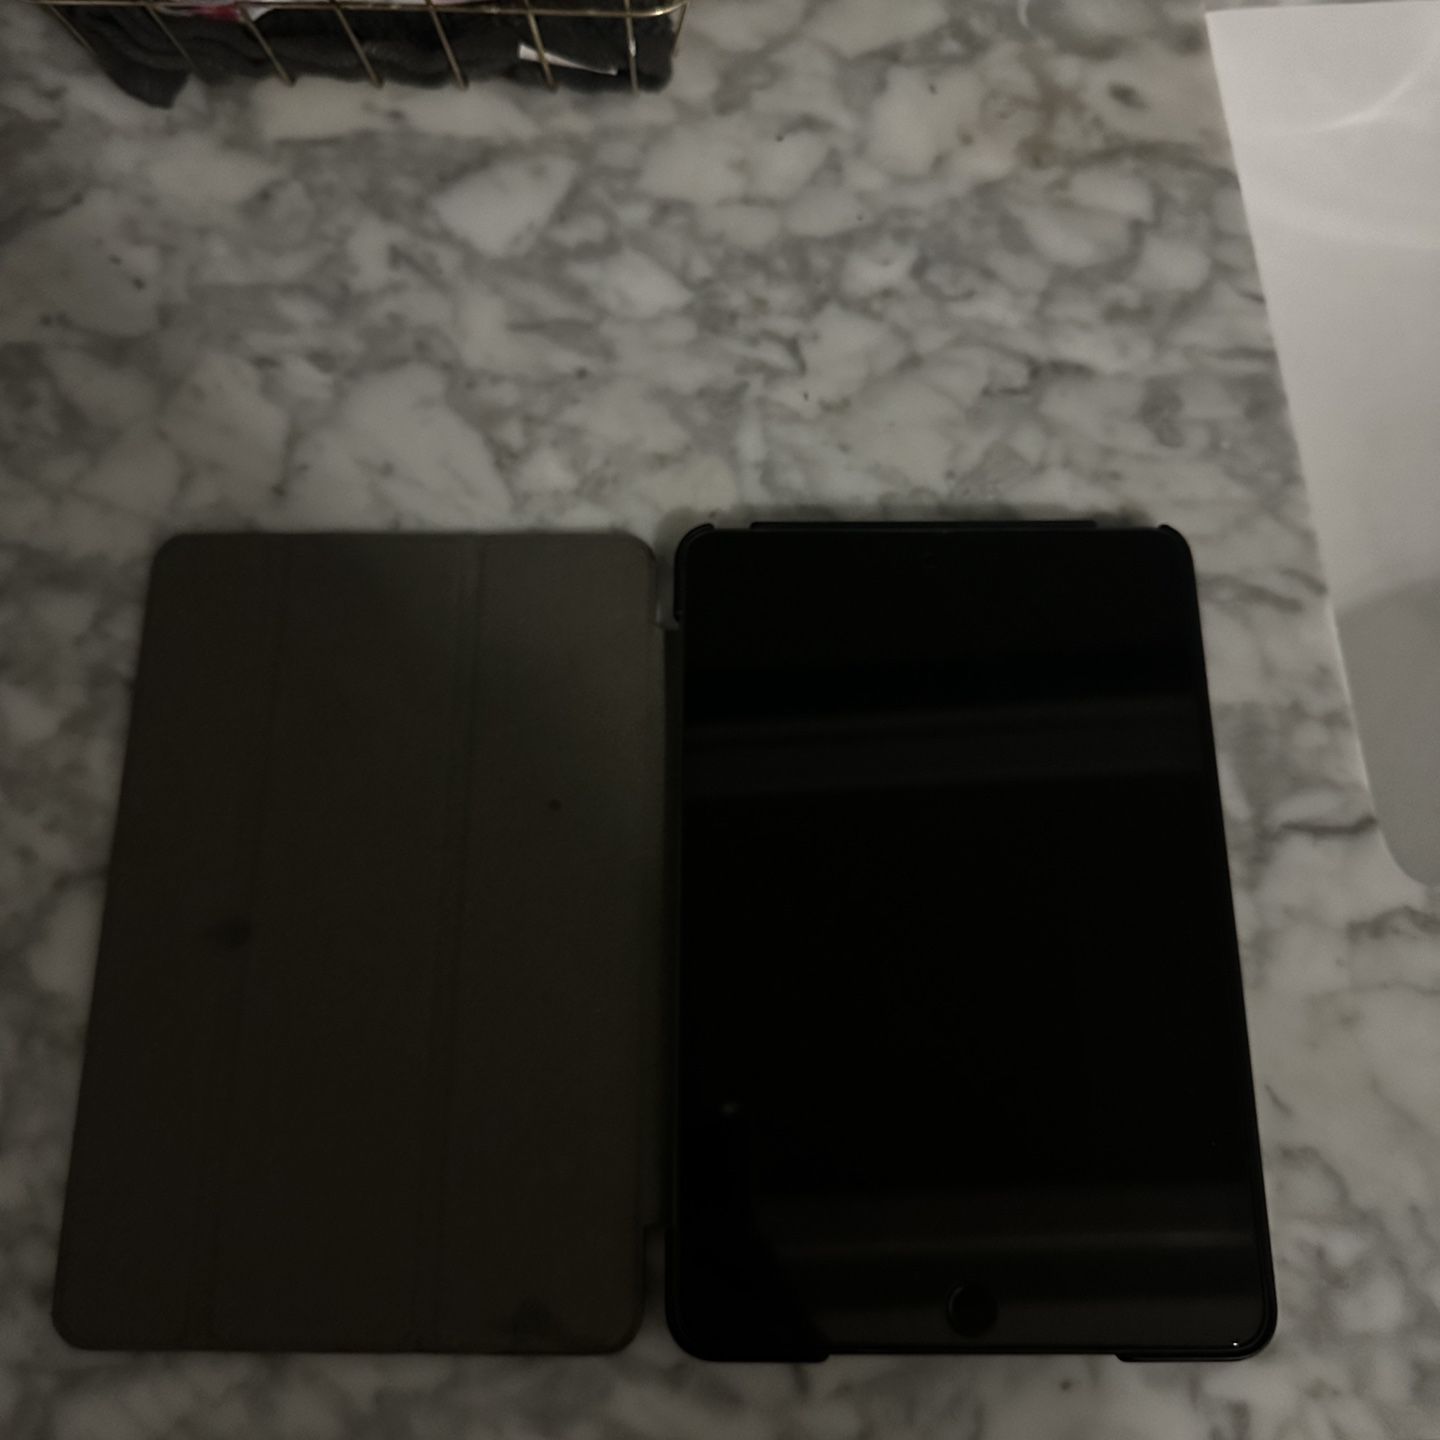 Apple 2019 iPad Mini (Wi-Fi, 64GB) - Space Gray